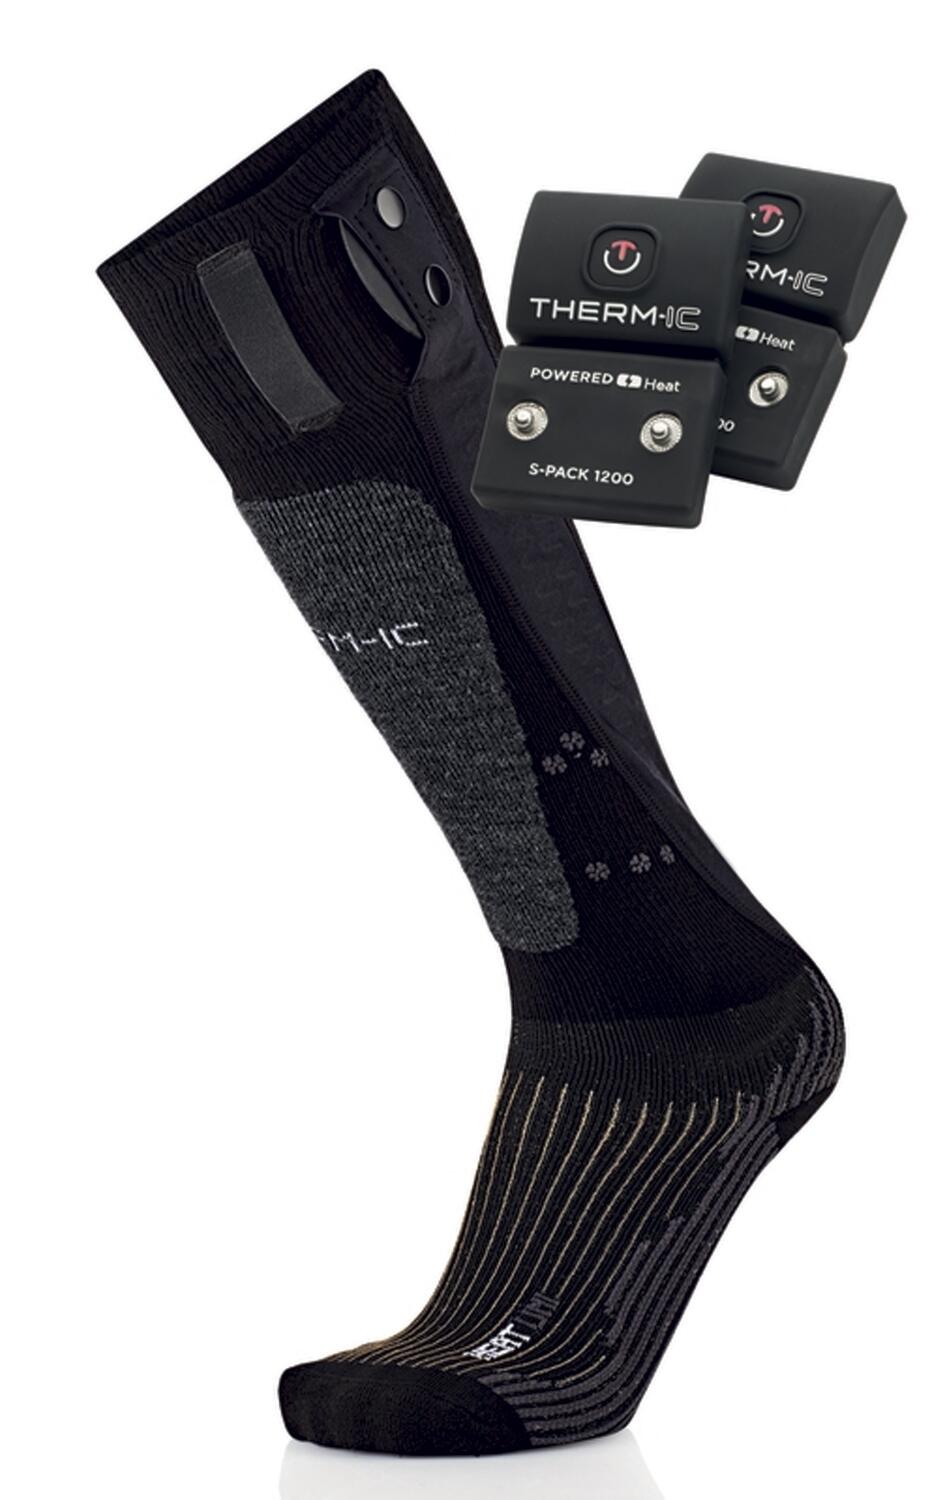 Therm-ic PowerSock Set Heat Uni+ SPack 1200 V2 (45.0 - 47.0, schwarz/grau) von Therm-ic